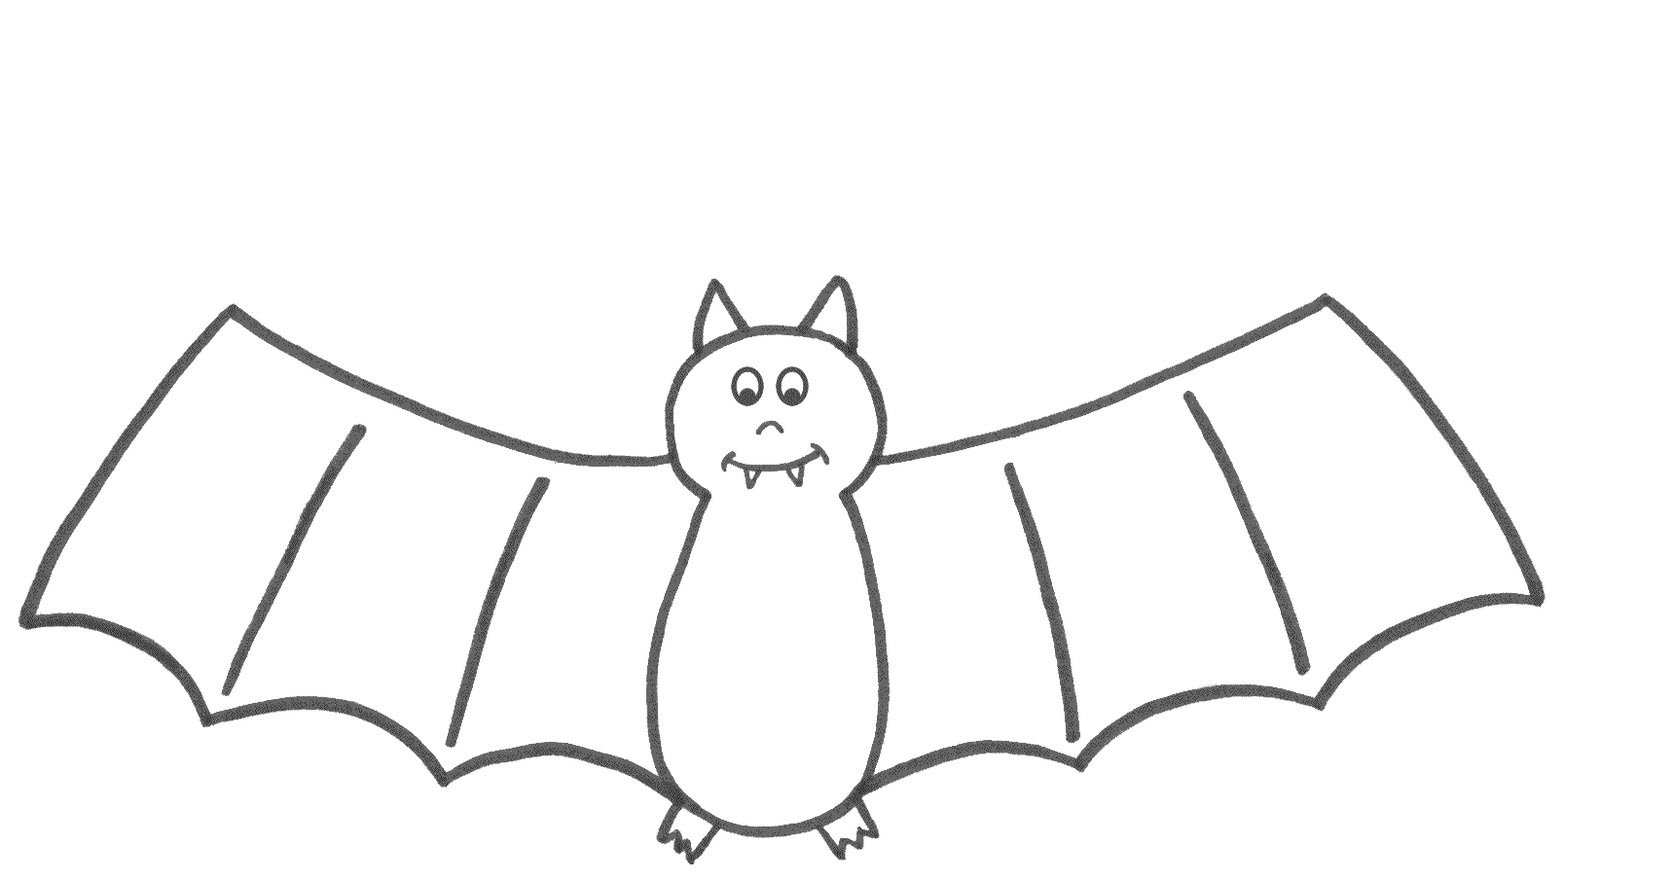 Bat Drawing Template at GetDrawings Free download